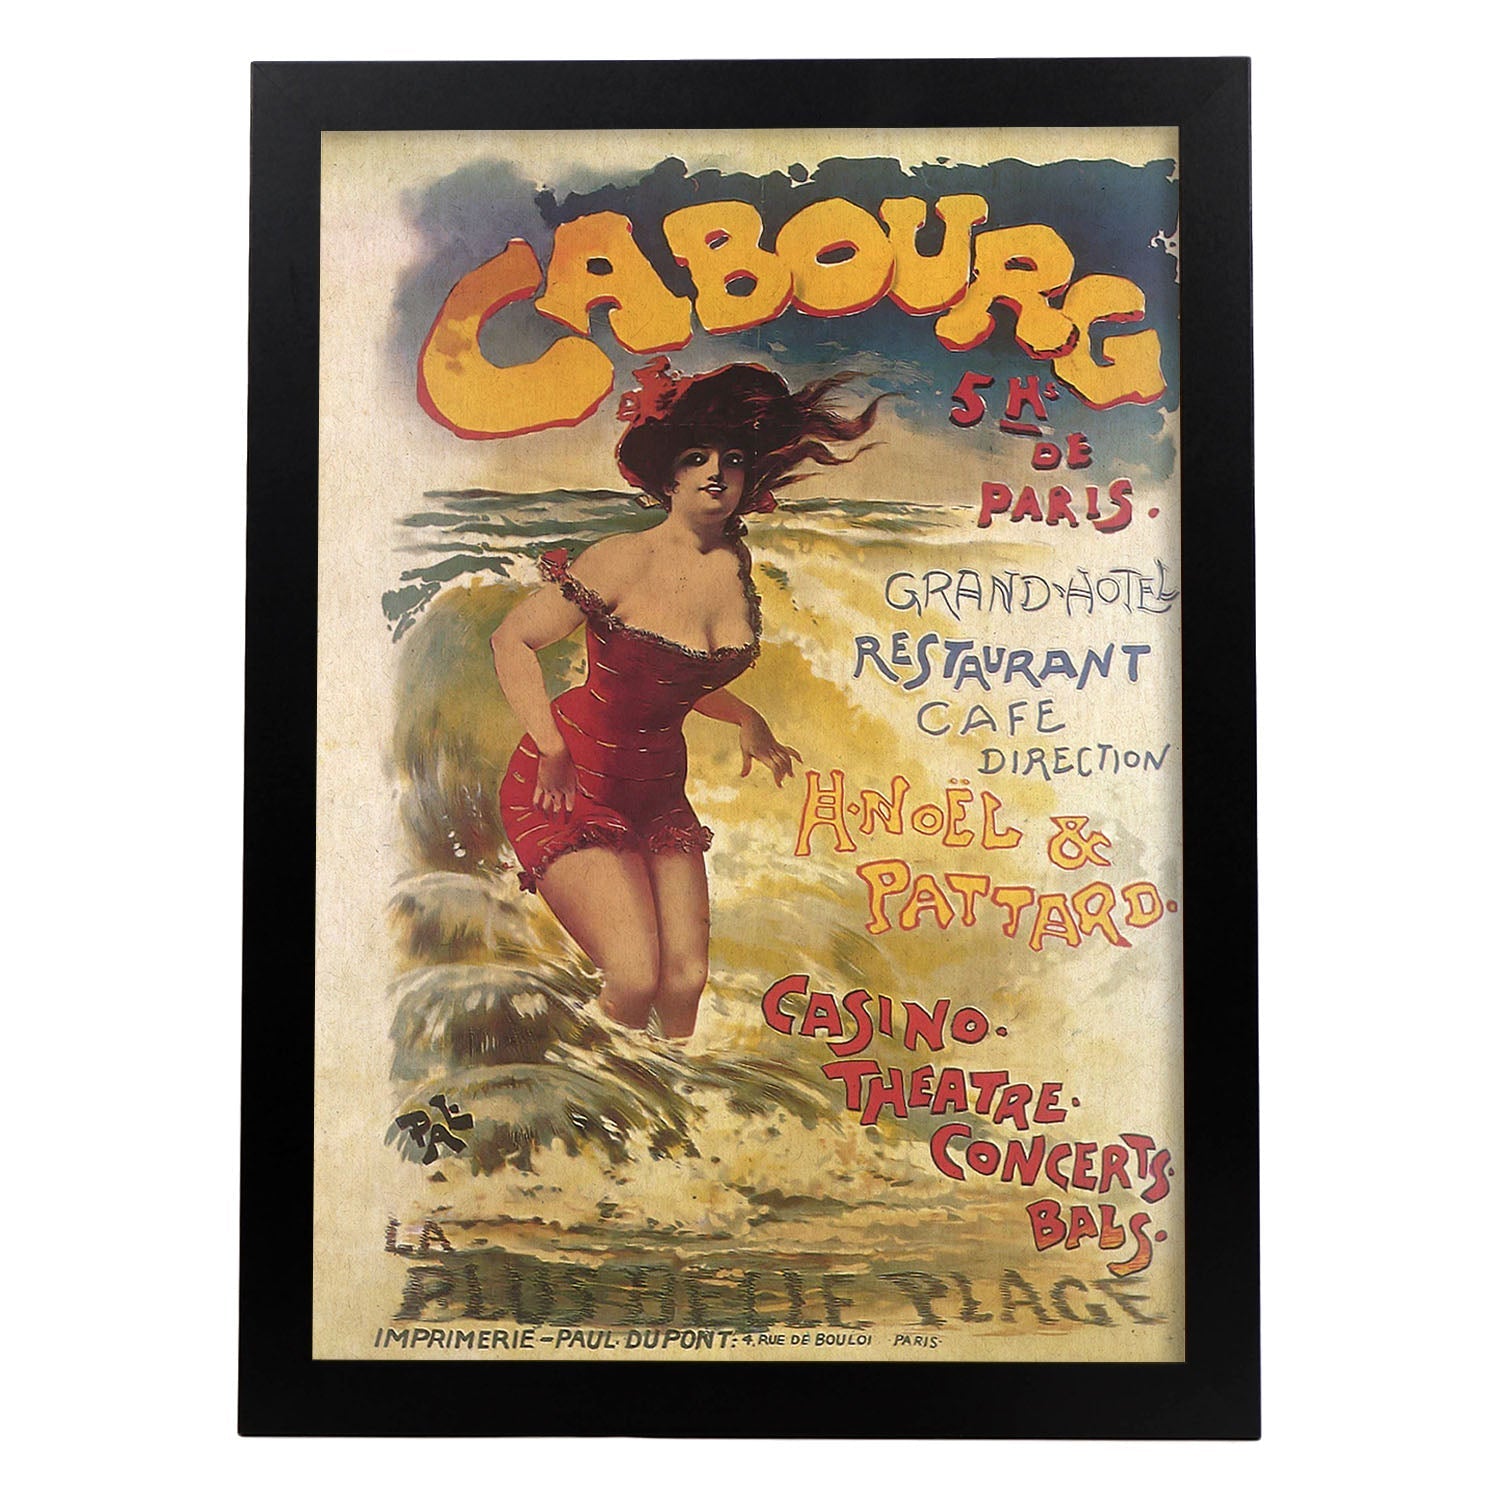 Poster vintage. Cartel vintage anuncio Casino Cabourg de Paris.-Artwork-Nacnic-A4-Marco Negro-Nacnic Estudio SL